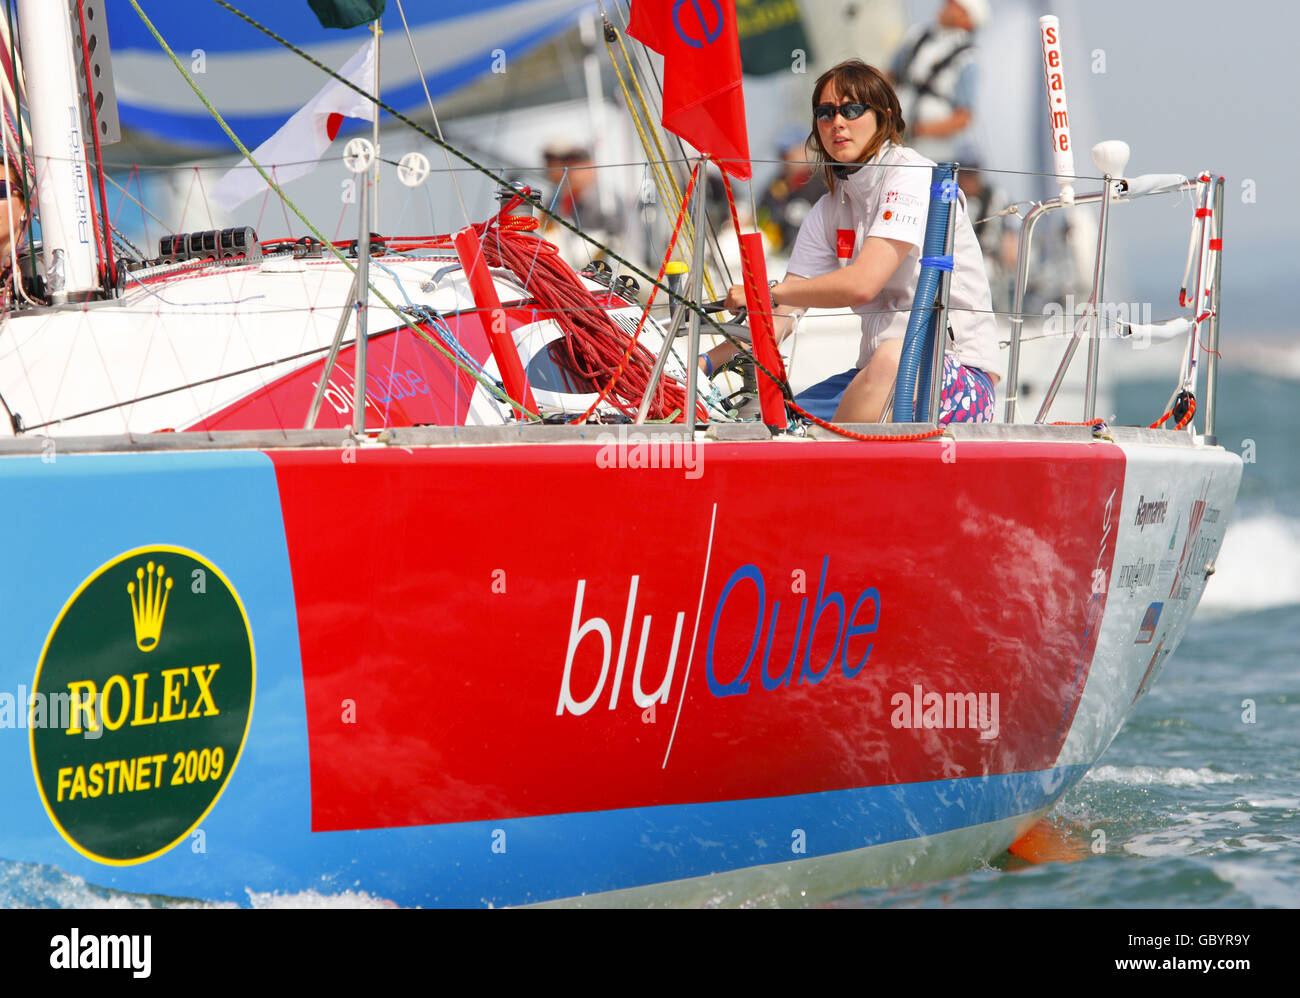 La giovane yachtswoman Katie Miller a bordo della sua barca all'inizio della biennale Rolex Fastnet Race sul Solent. Foto Stock